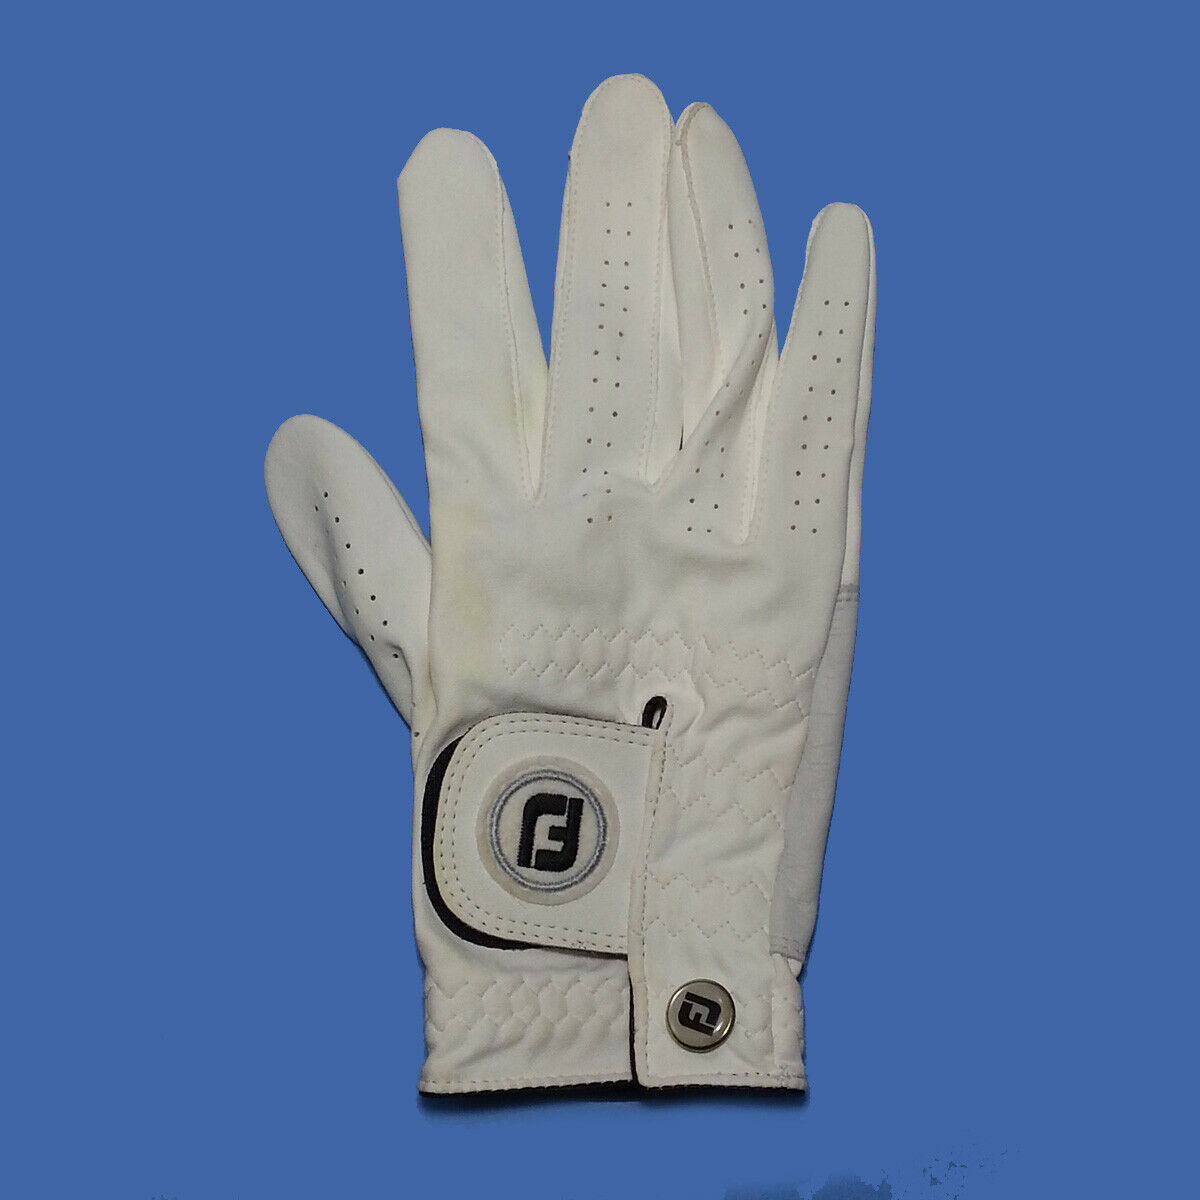 Footjoy Glove: 3 listings